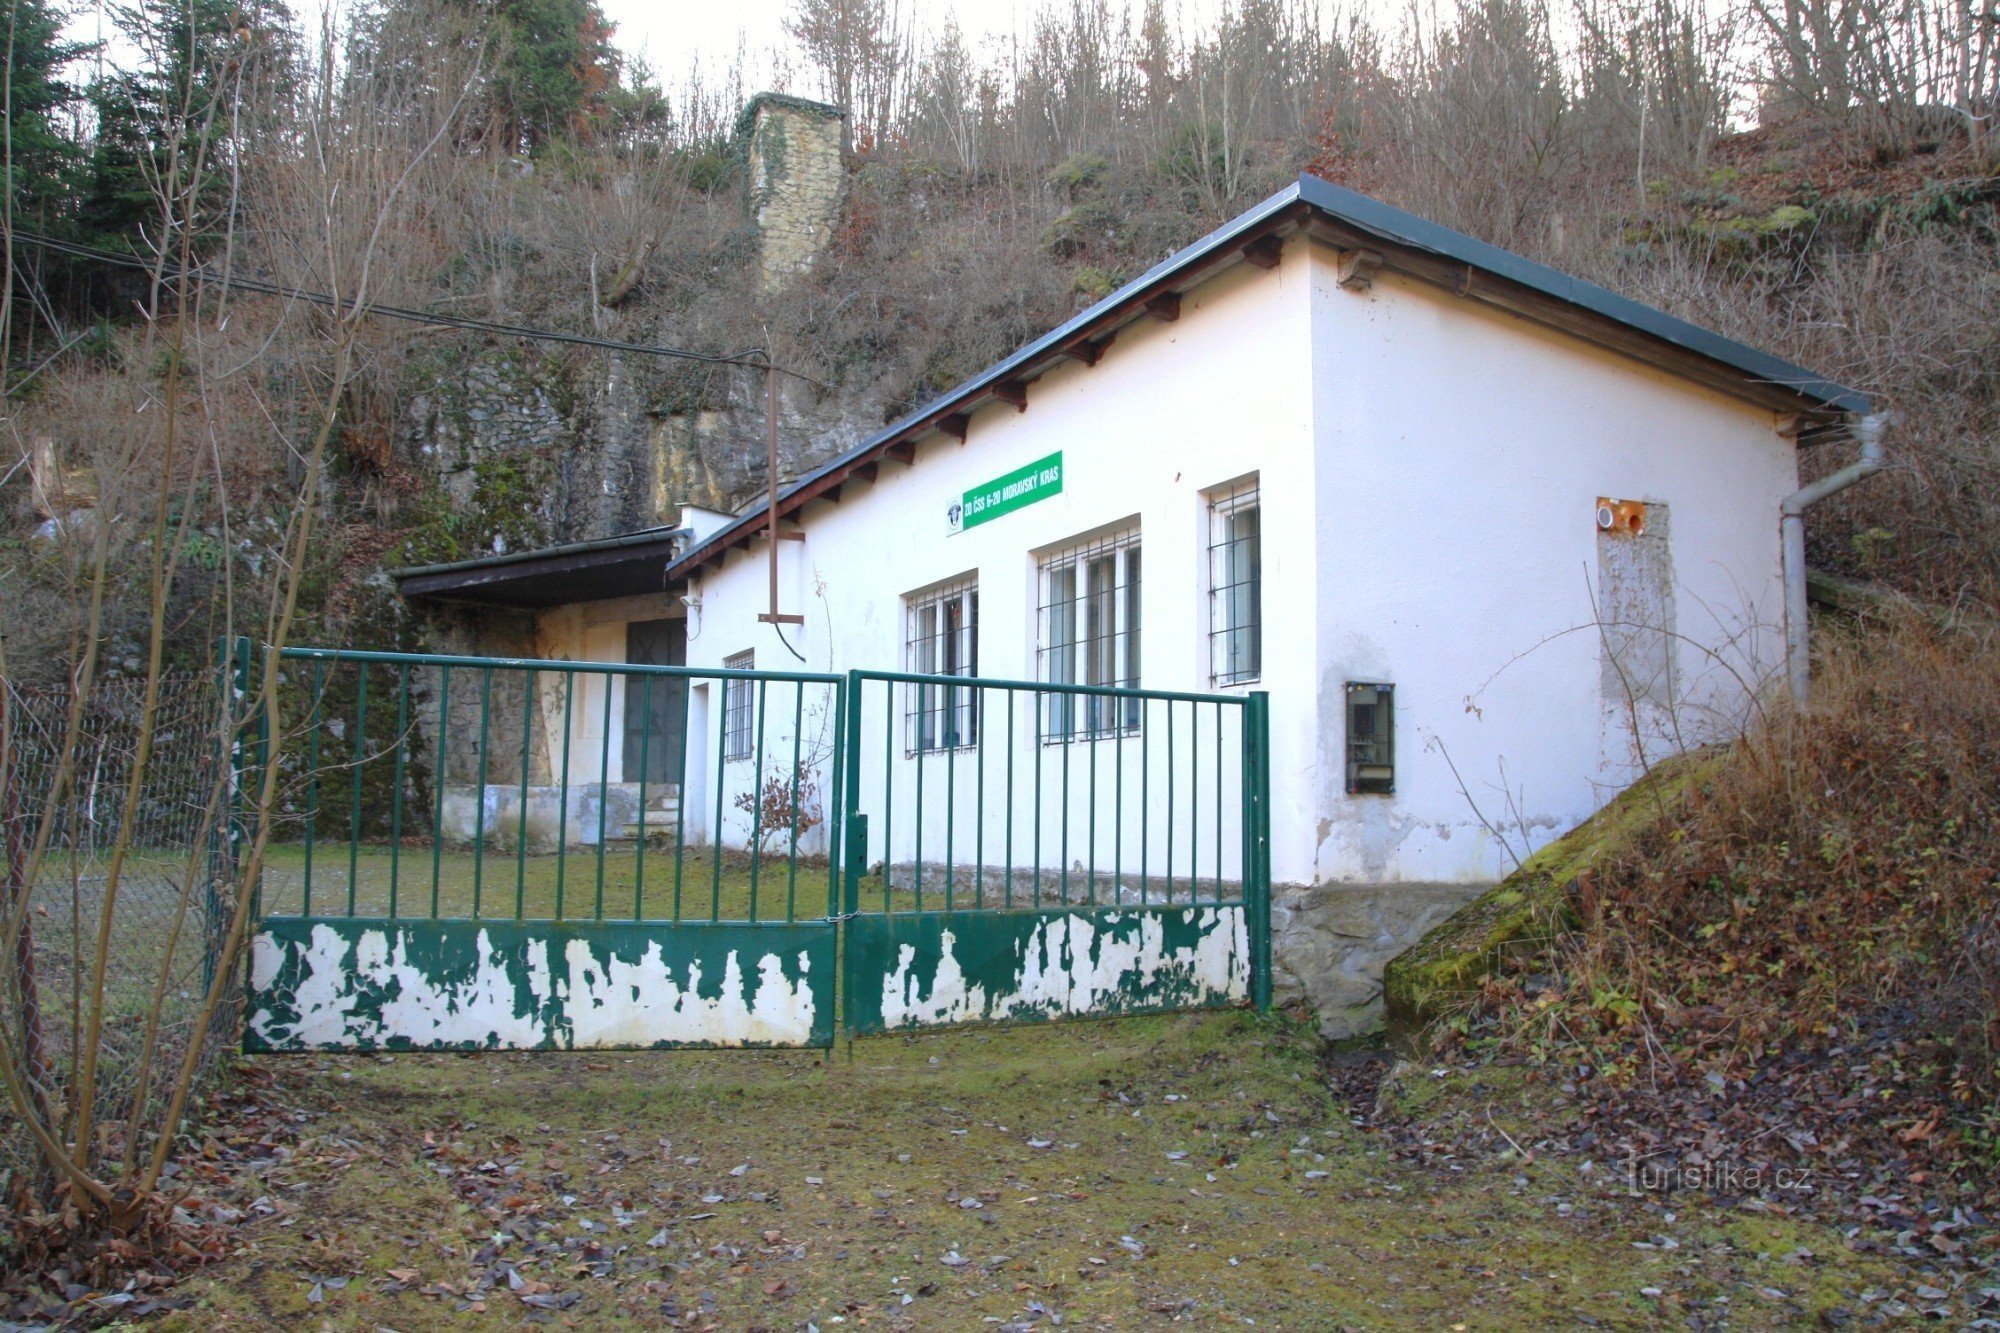 Indgang til Michálka-grotten med den tidligere driftsbygning